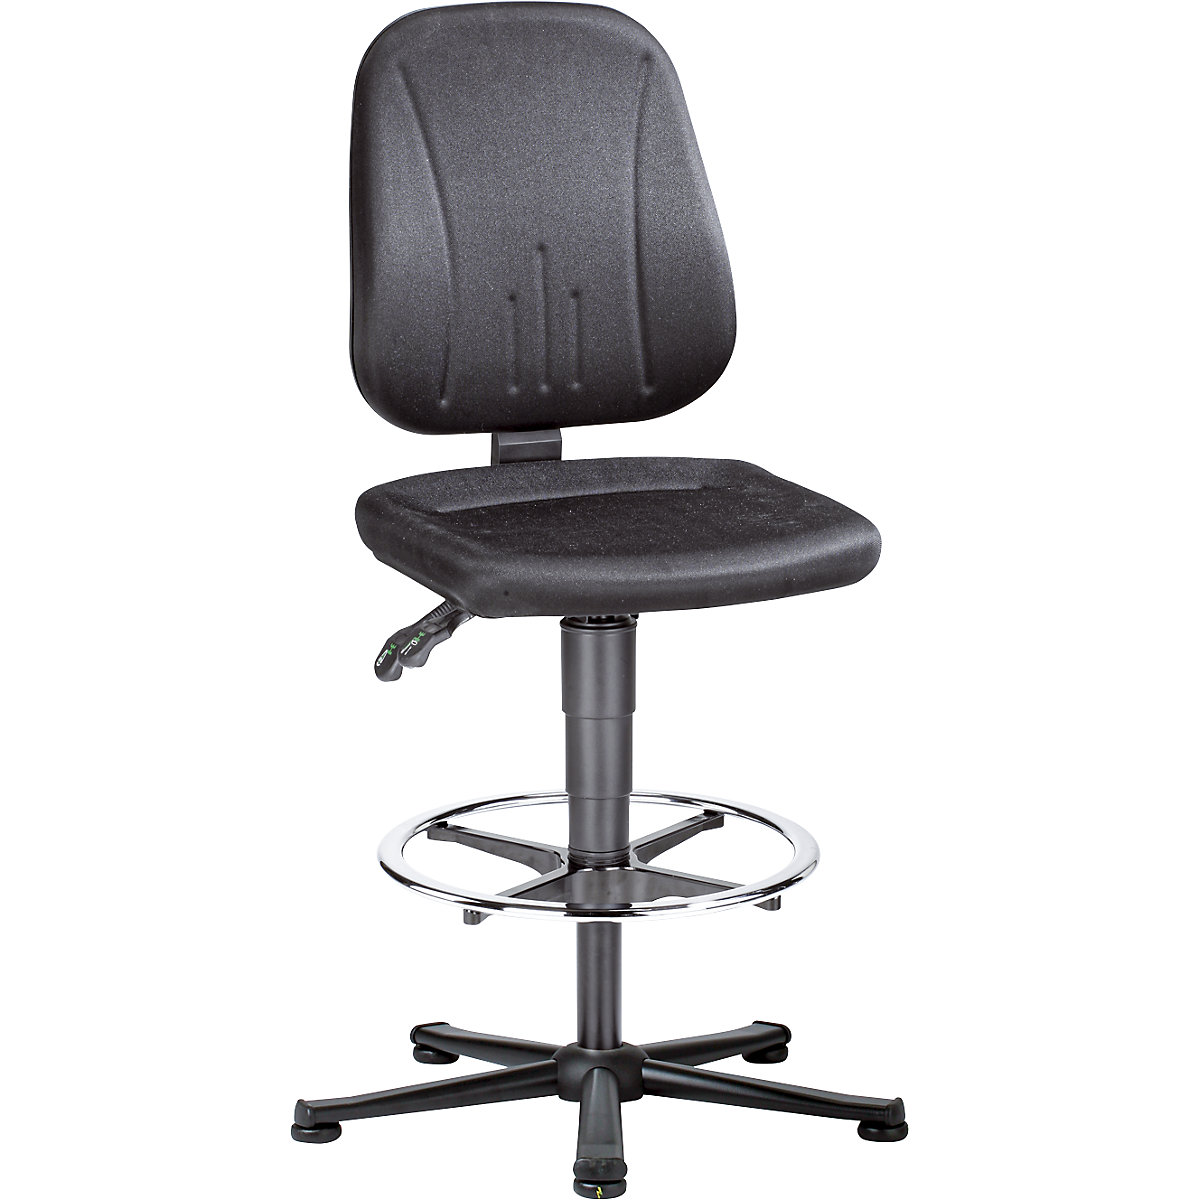 ESD pracovní otočná židle – bimos, černý látkový potah, podstavec s pěti nohami z ocelové trubky, s podlahovými patkami a nožním kruhem-2